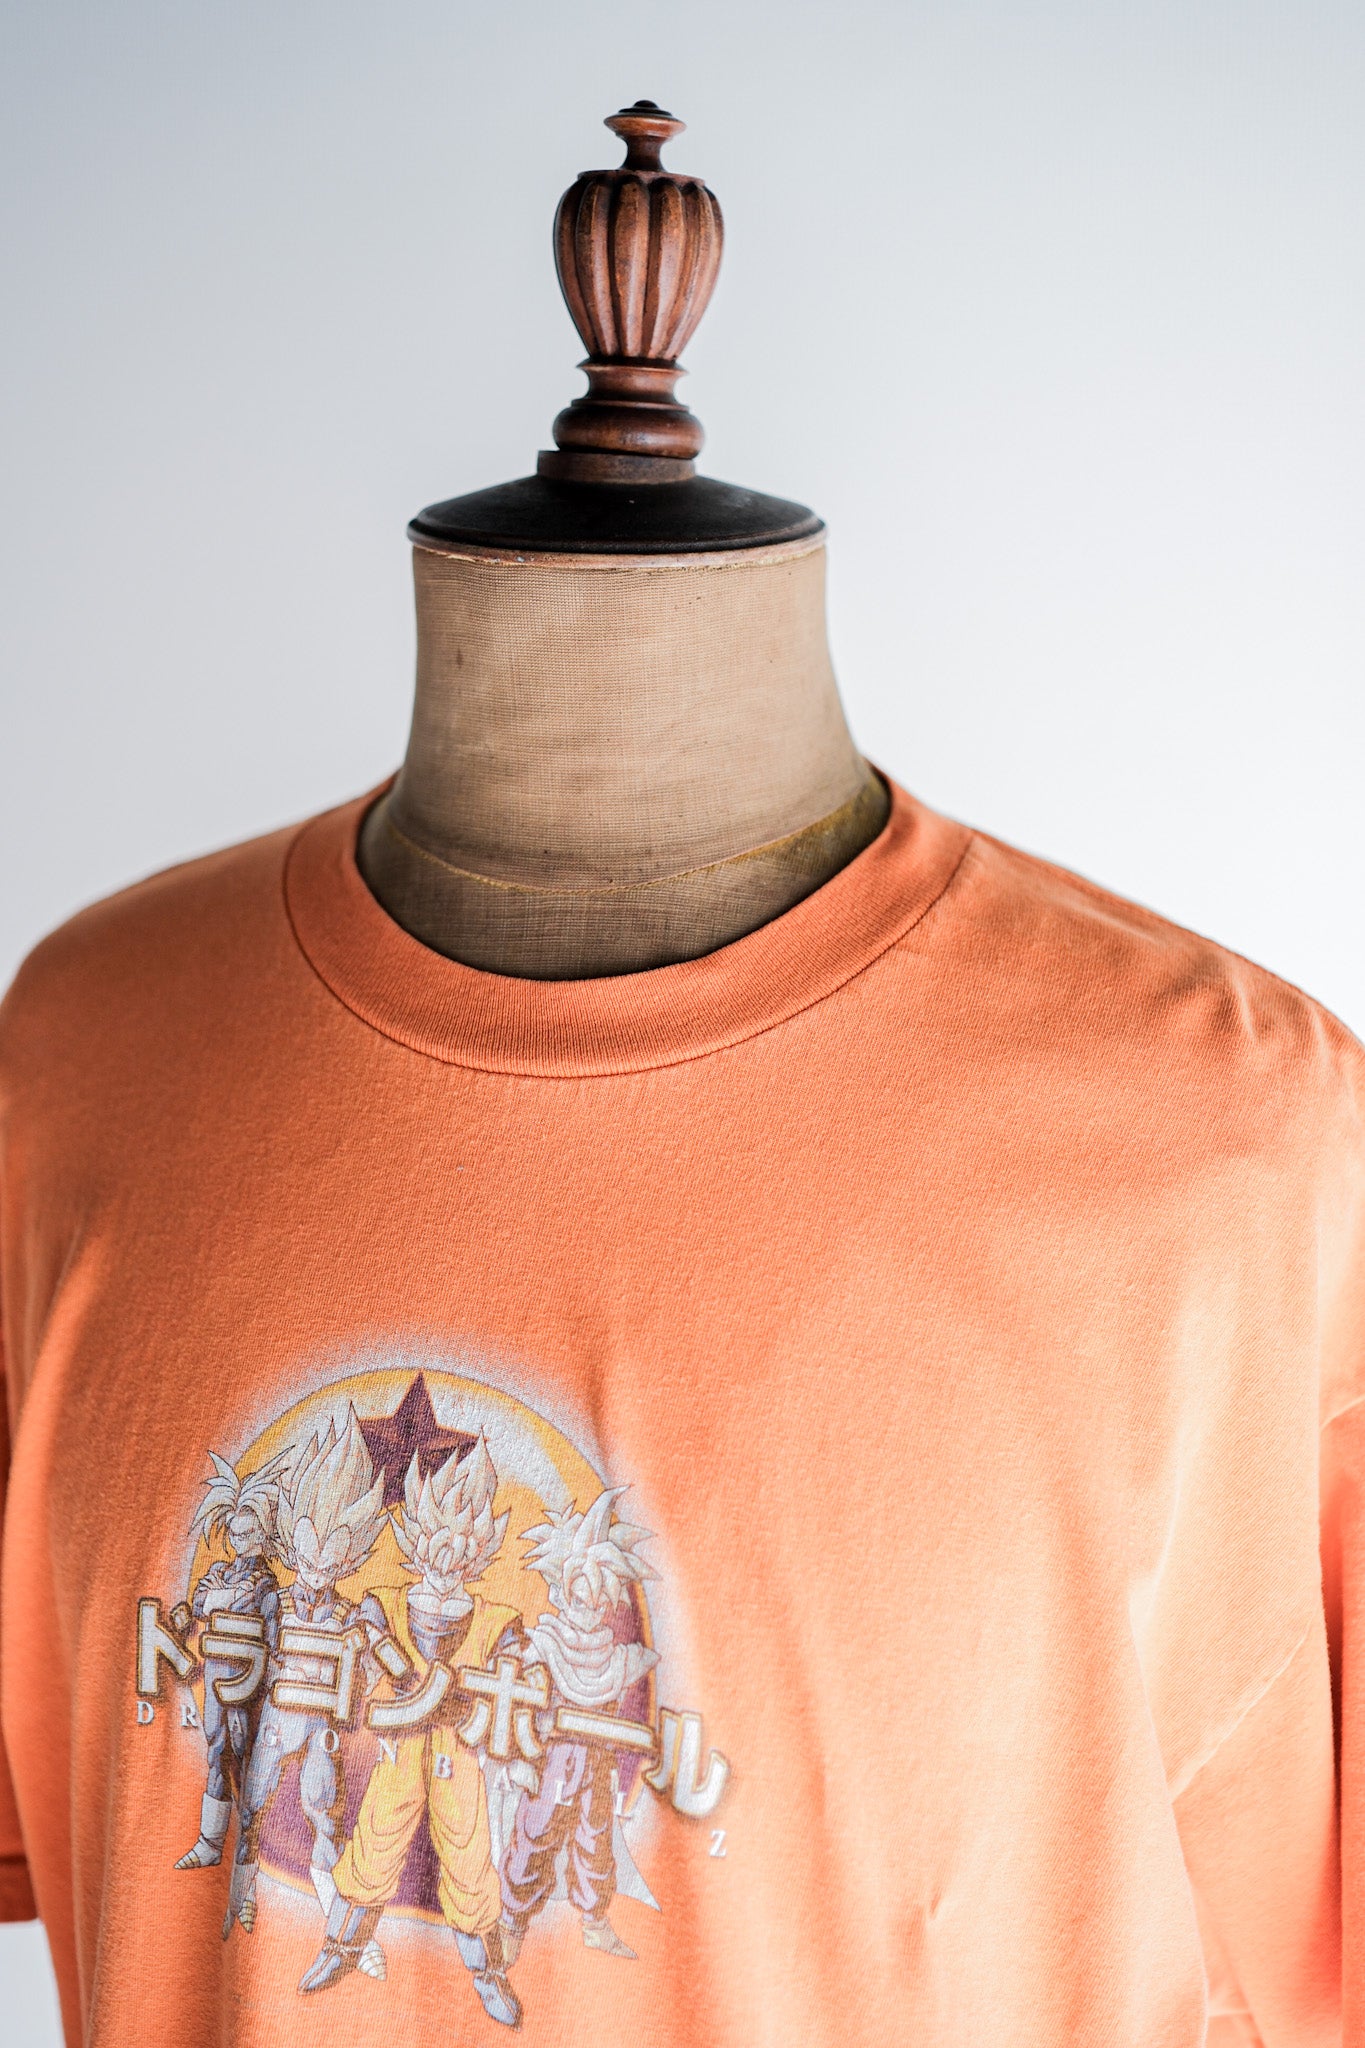 [~ 90 년대] 빈티지 애니메이션 프린트 티셔츠 크기 .xl "Dragon Ball" "미국에서 만든"